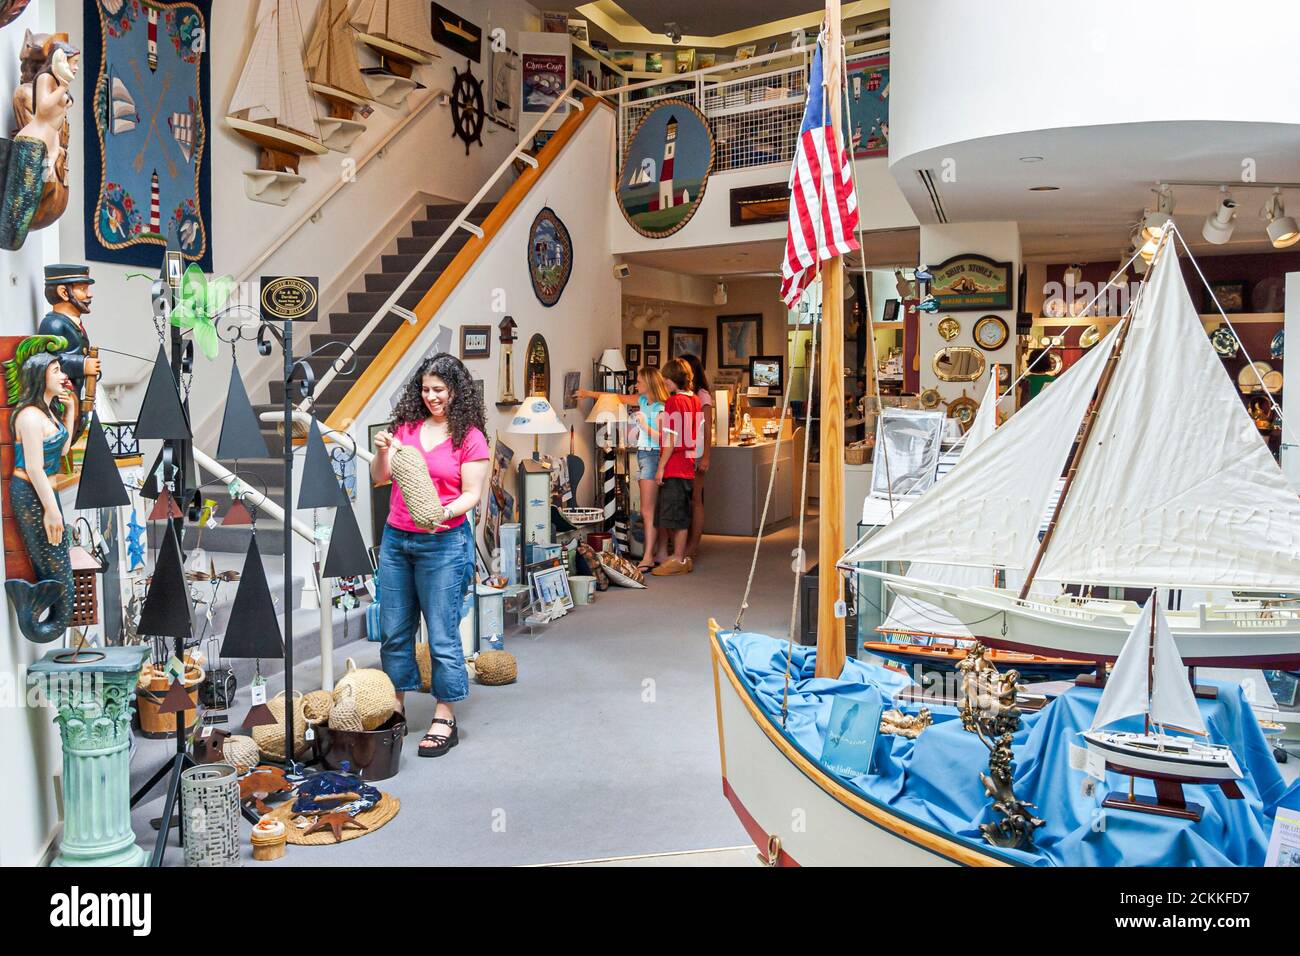 Newport News Virginia, Mariners' Museum and Park, exposiciones de la colección de historia interior muestra modelos de barcos, artefactos mujer de visita turística Foto de stock